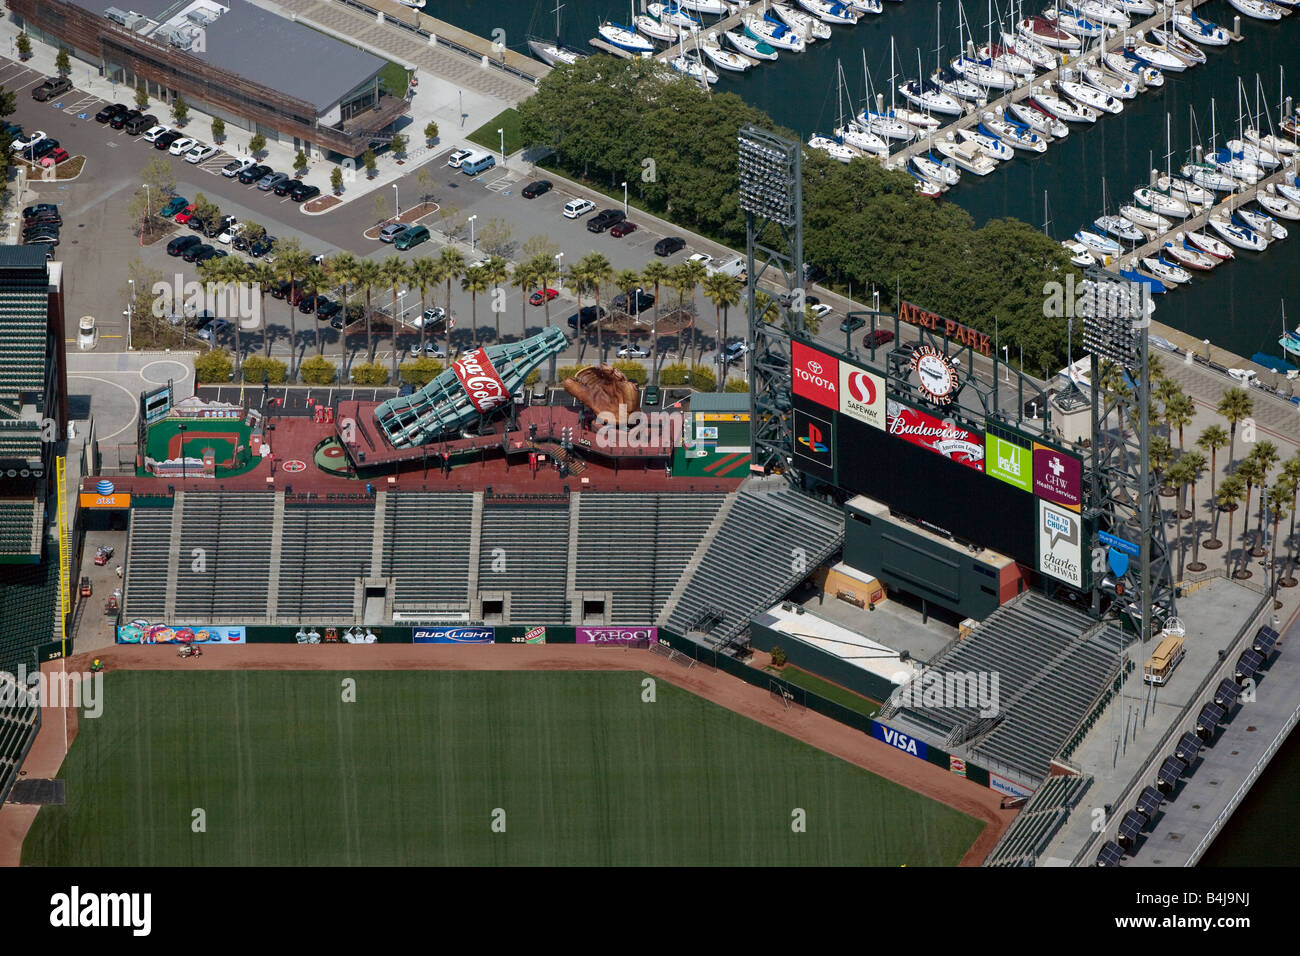 Publicidad anterior antena AT&T de un estadio de béisbol en San Francisco, California, Coca Cola, Visa Budweiser Foto de stock